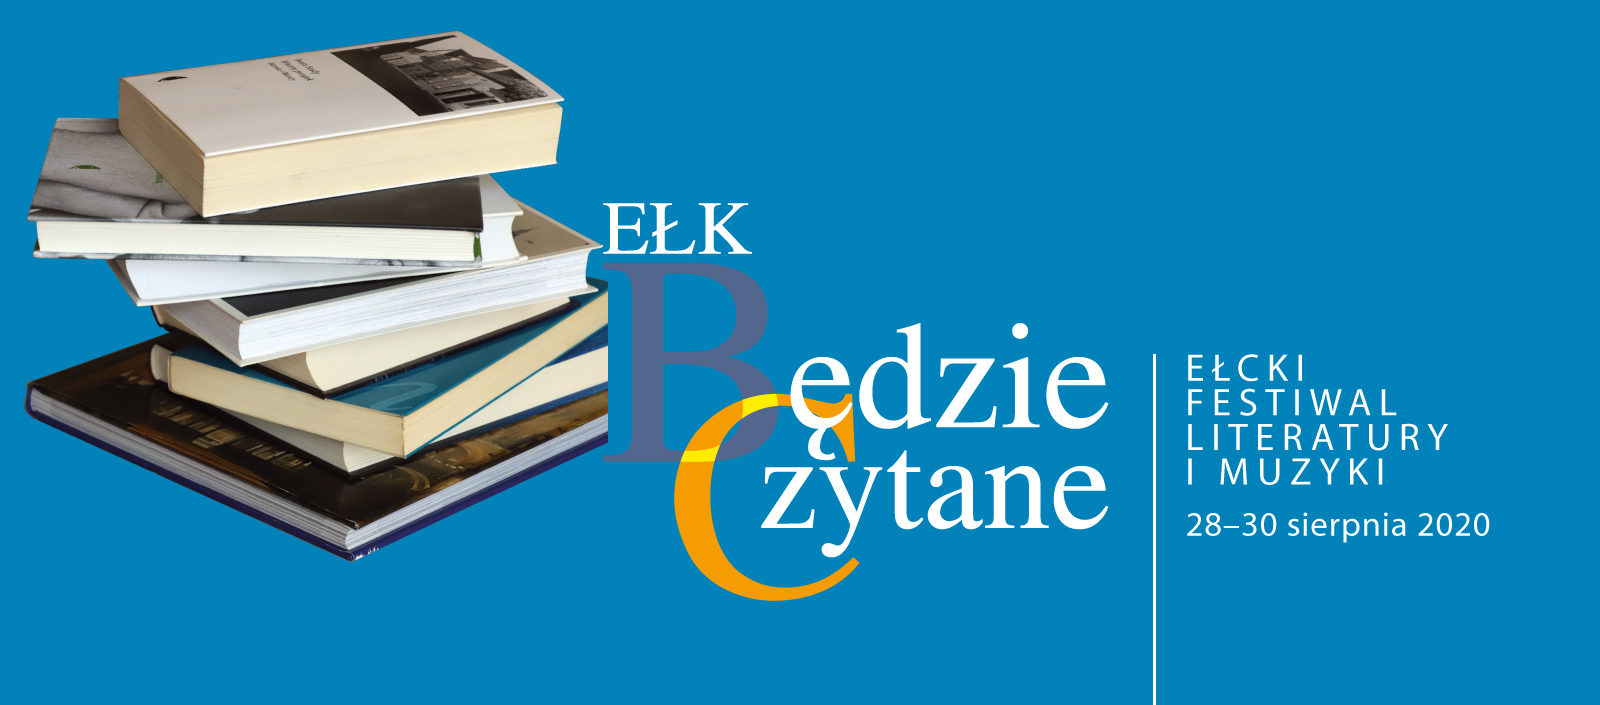 III Ełcki Festiwal Literatury i Muzyki Ełk, Będzie Czytane